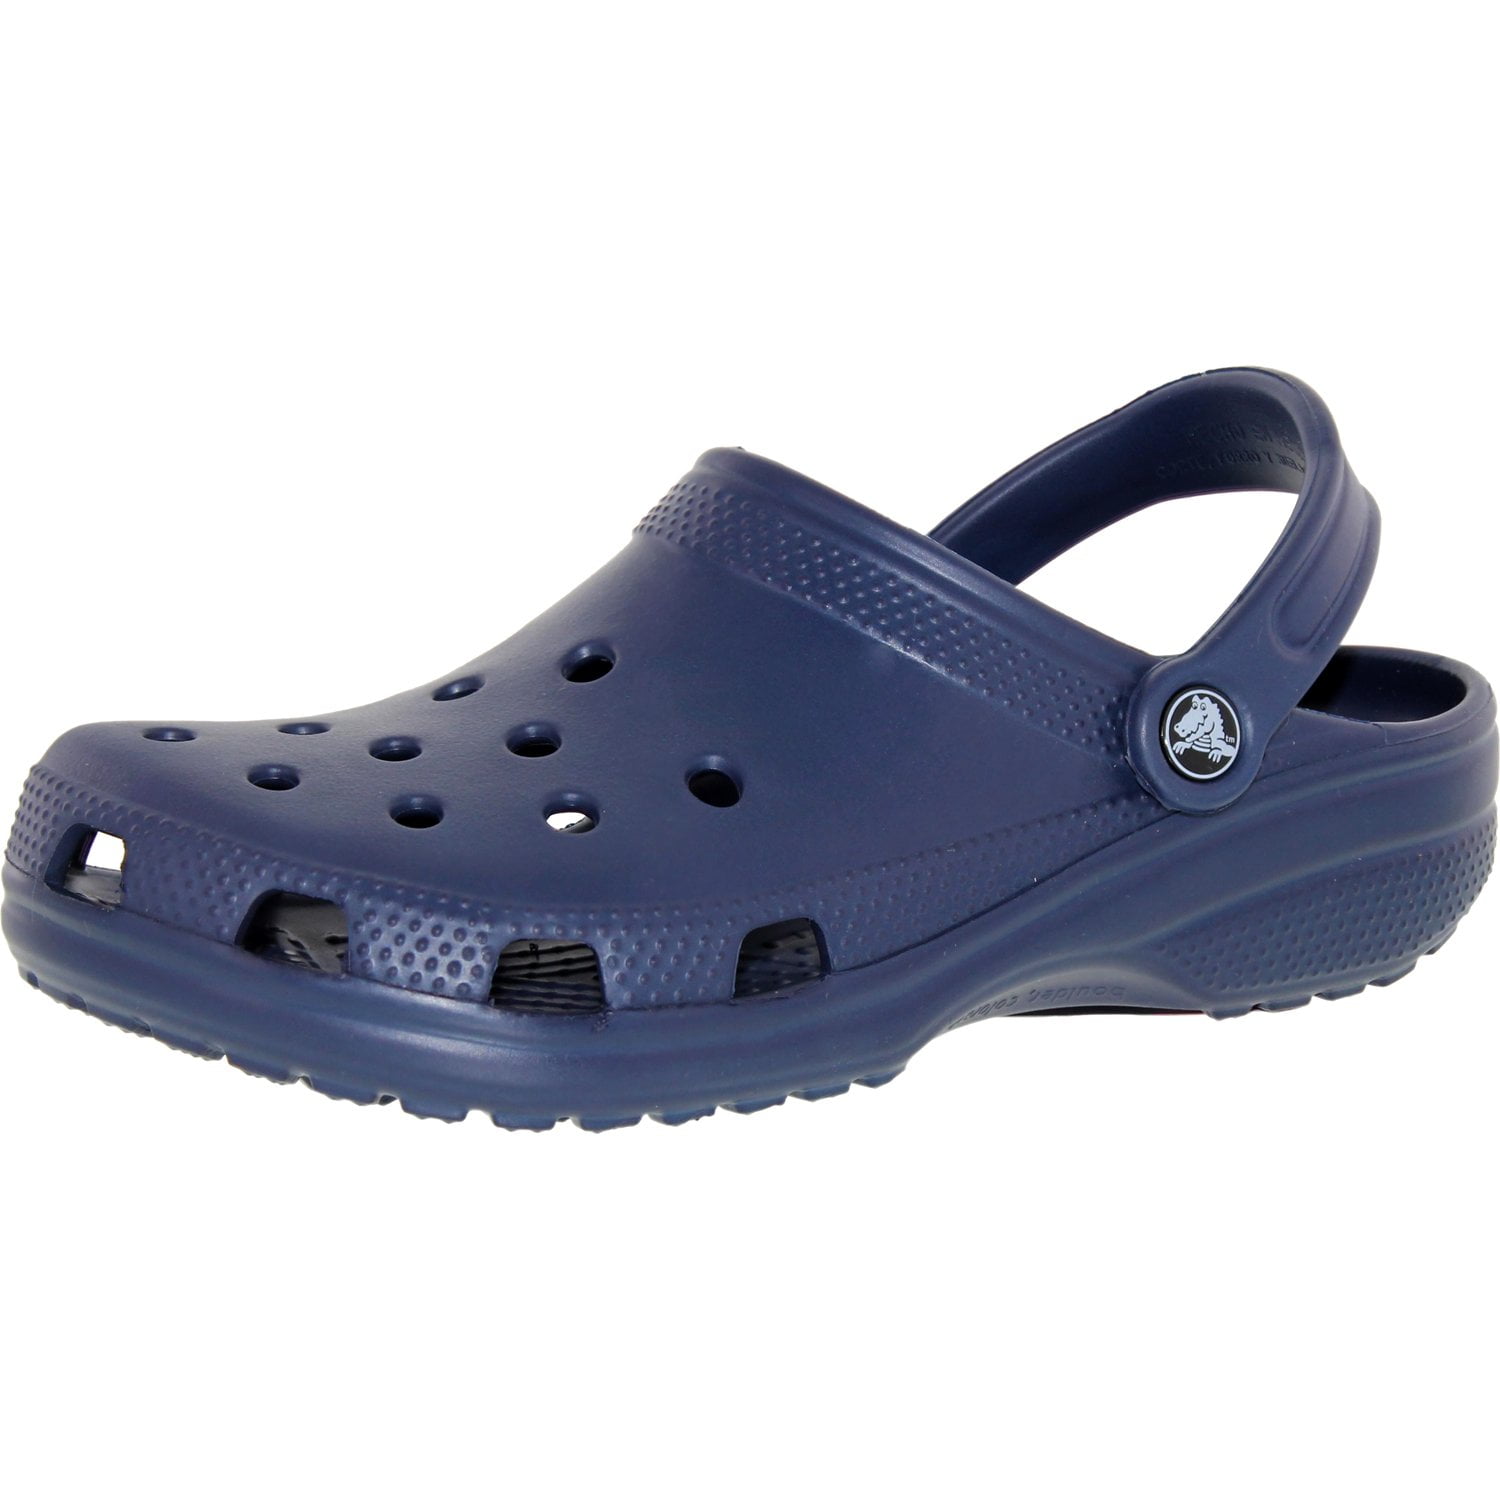 Crocs - Crocs Classic Clog - Walmart.com